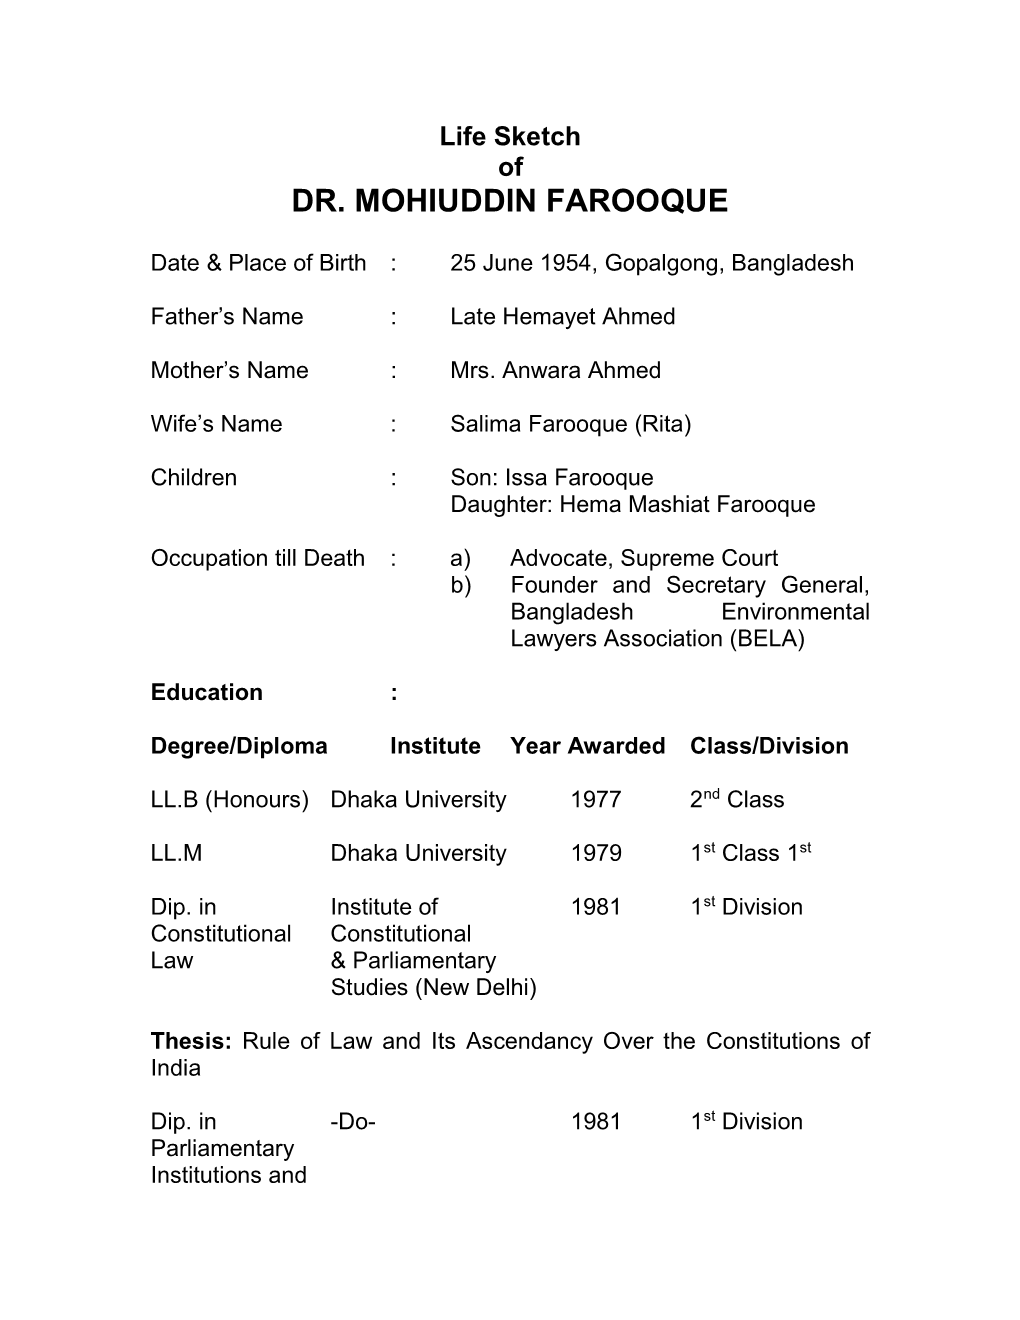 Dr. Mohiuddin Farooque